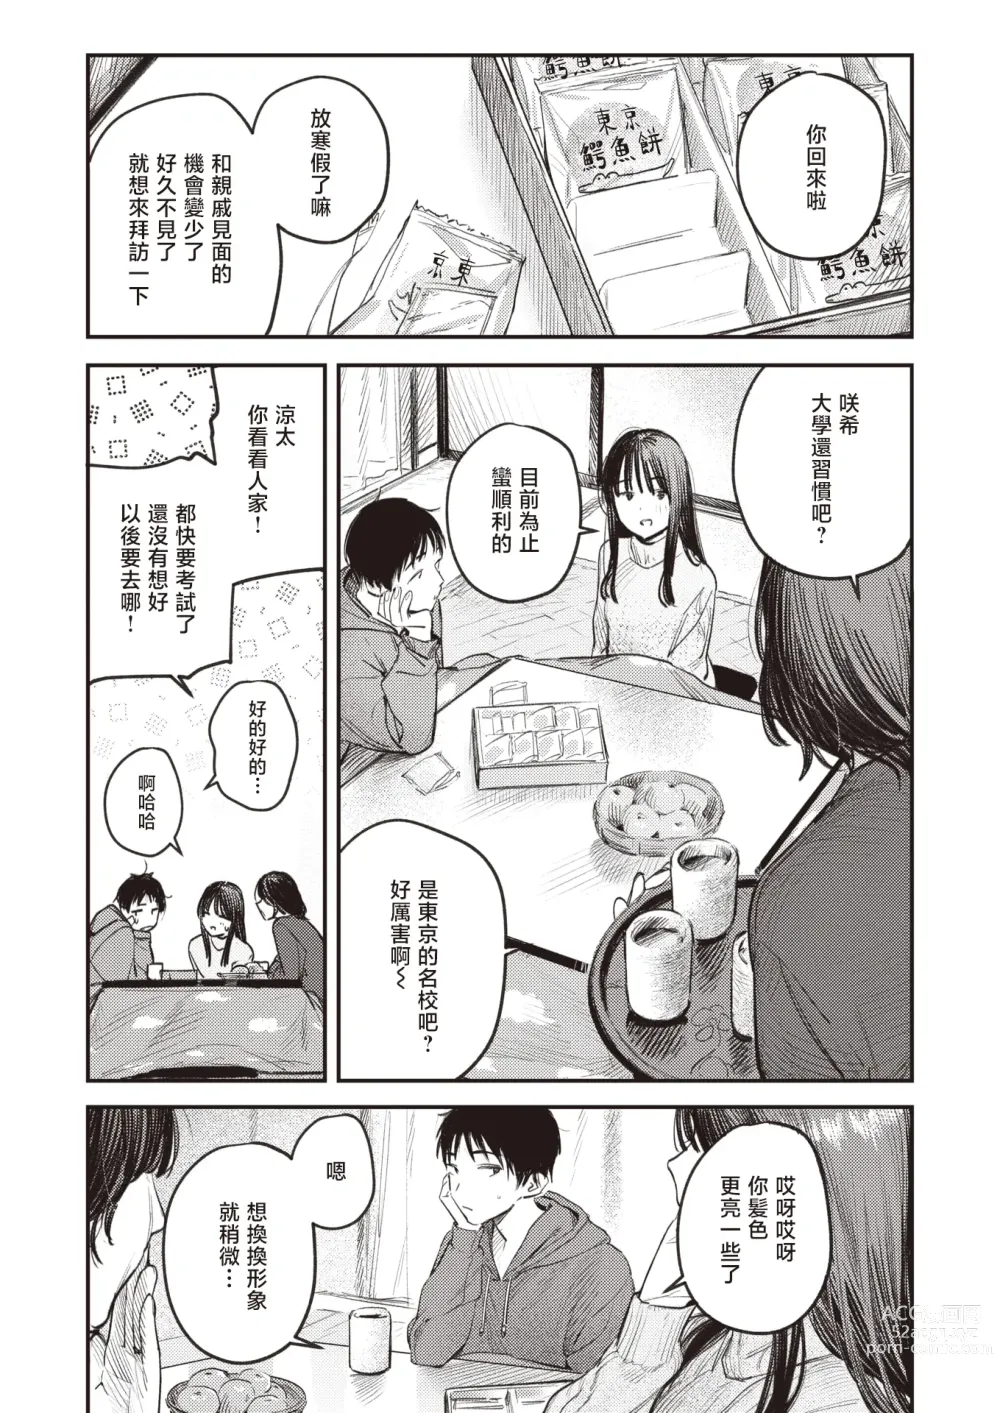 Page 3 of manga 直到雾释冰融